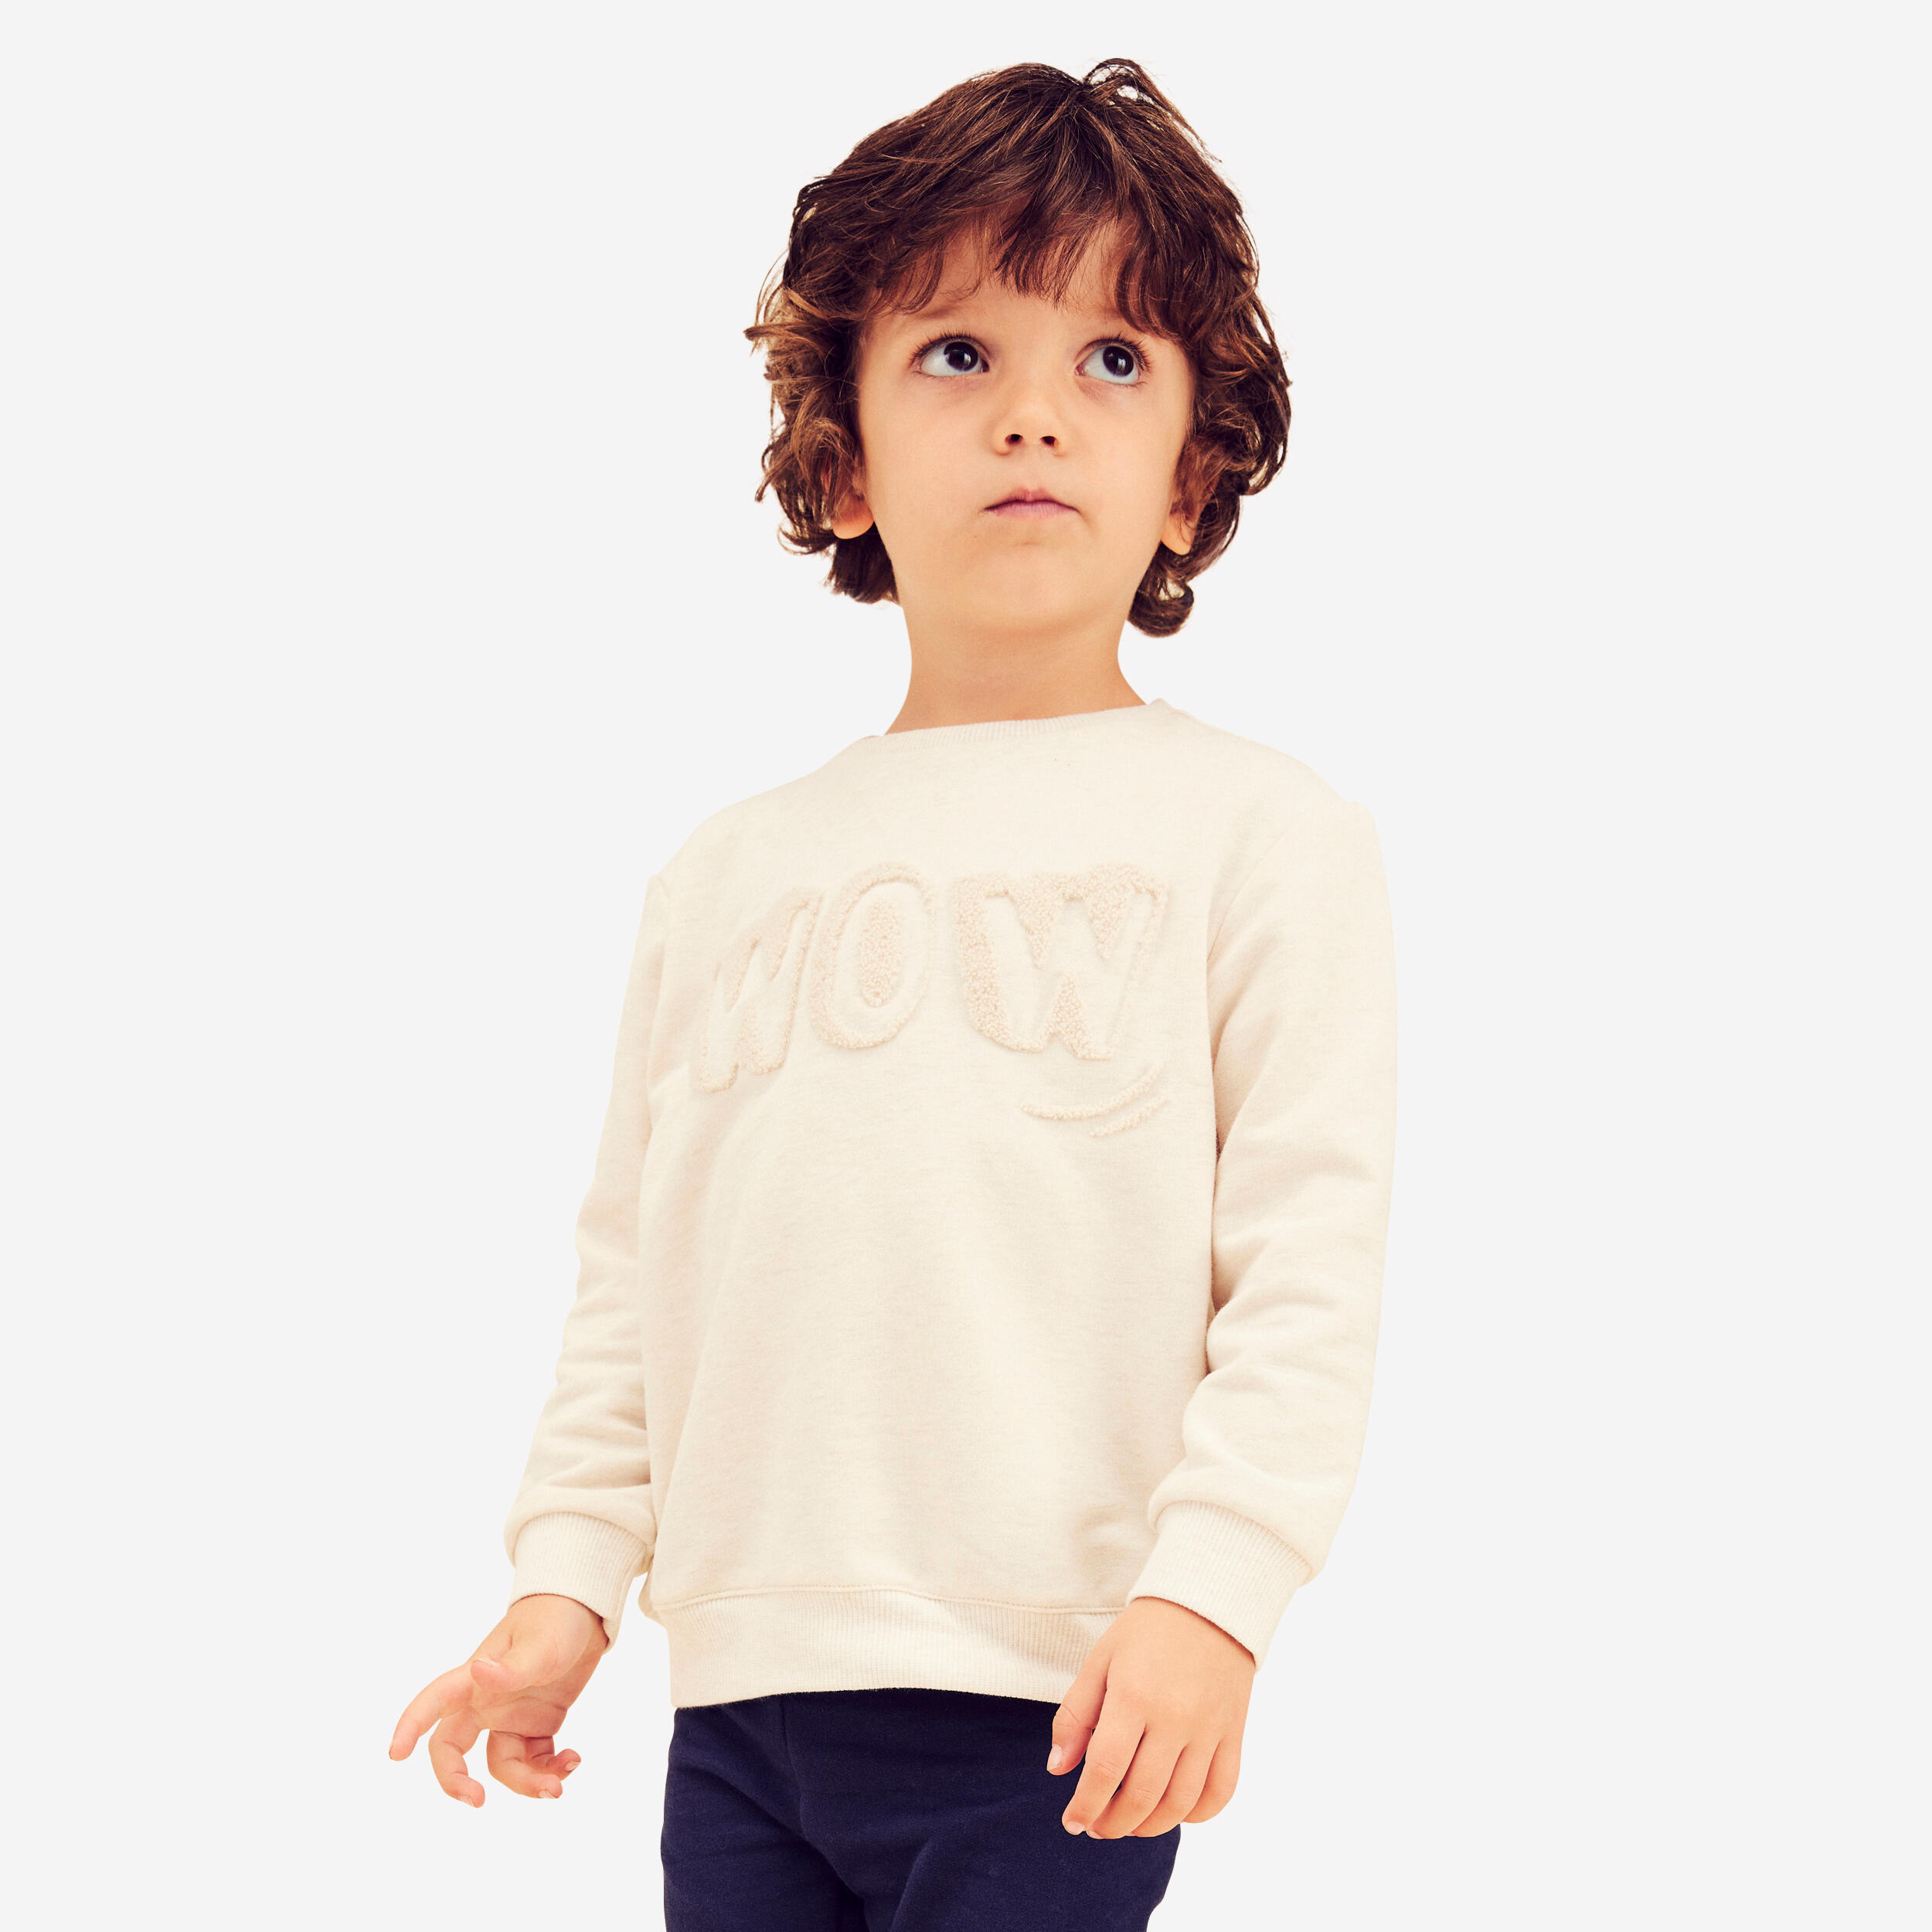 Kids' Sweatshirt Basic - Beige with Motifs 1/7